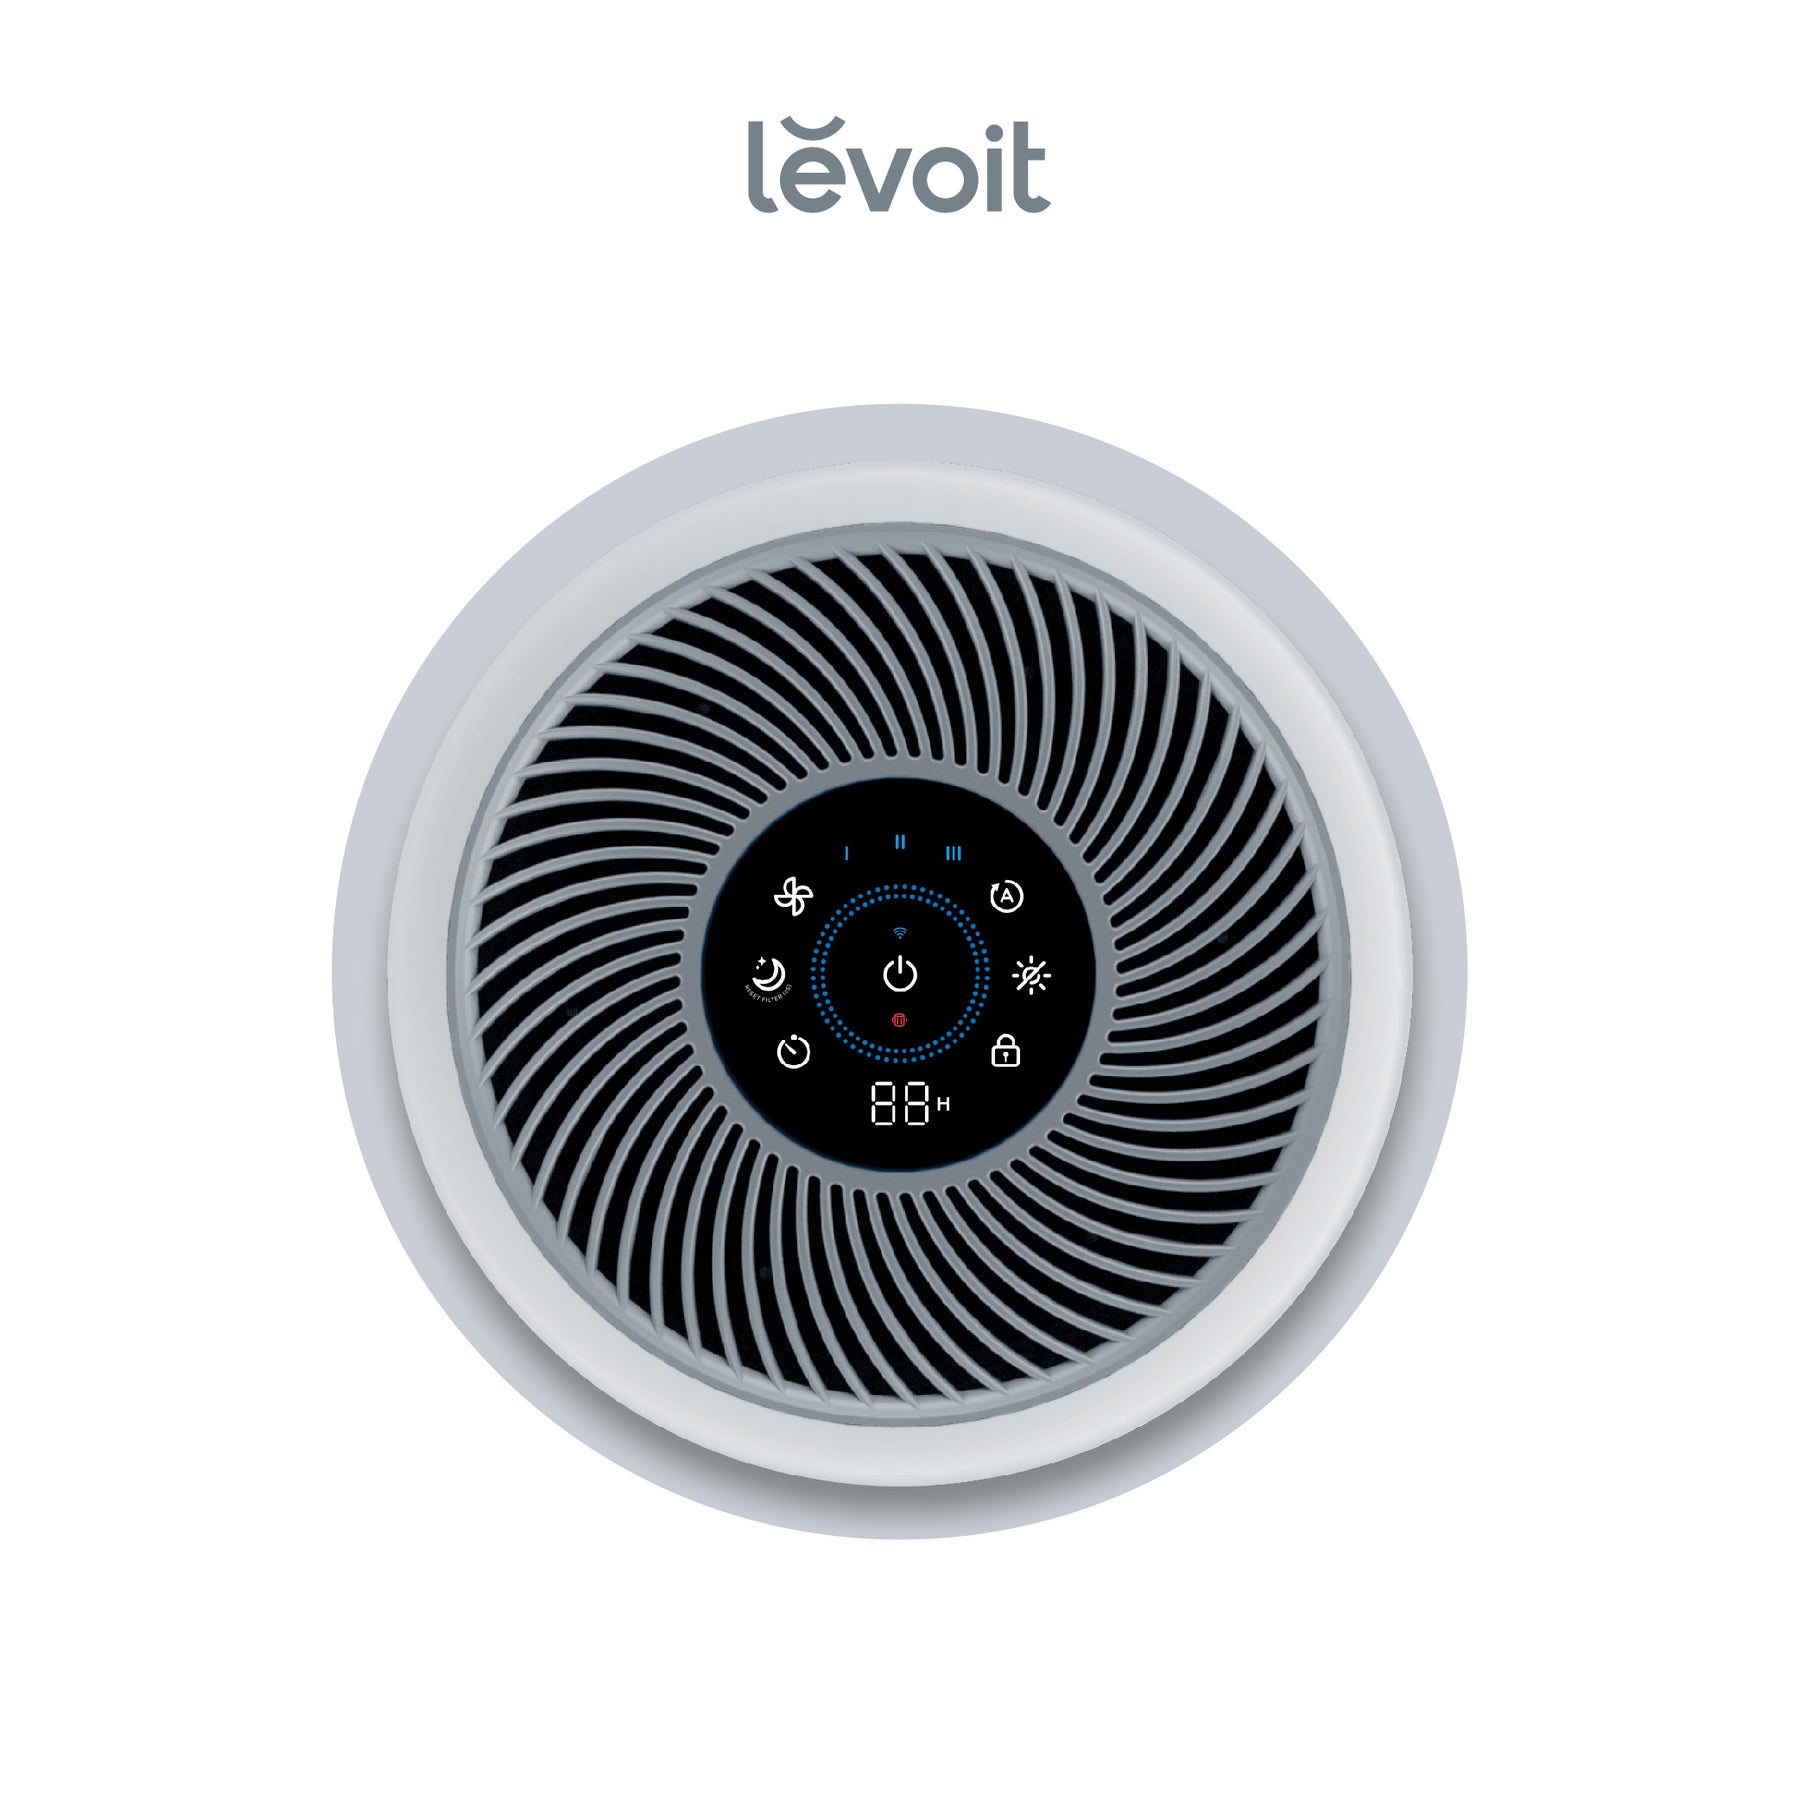 Levoit Air Purifier Core 300S